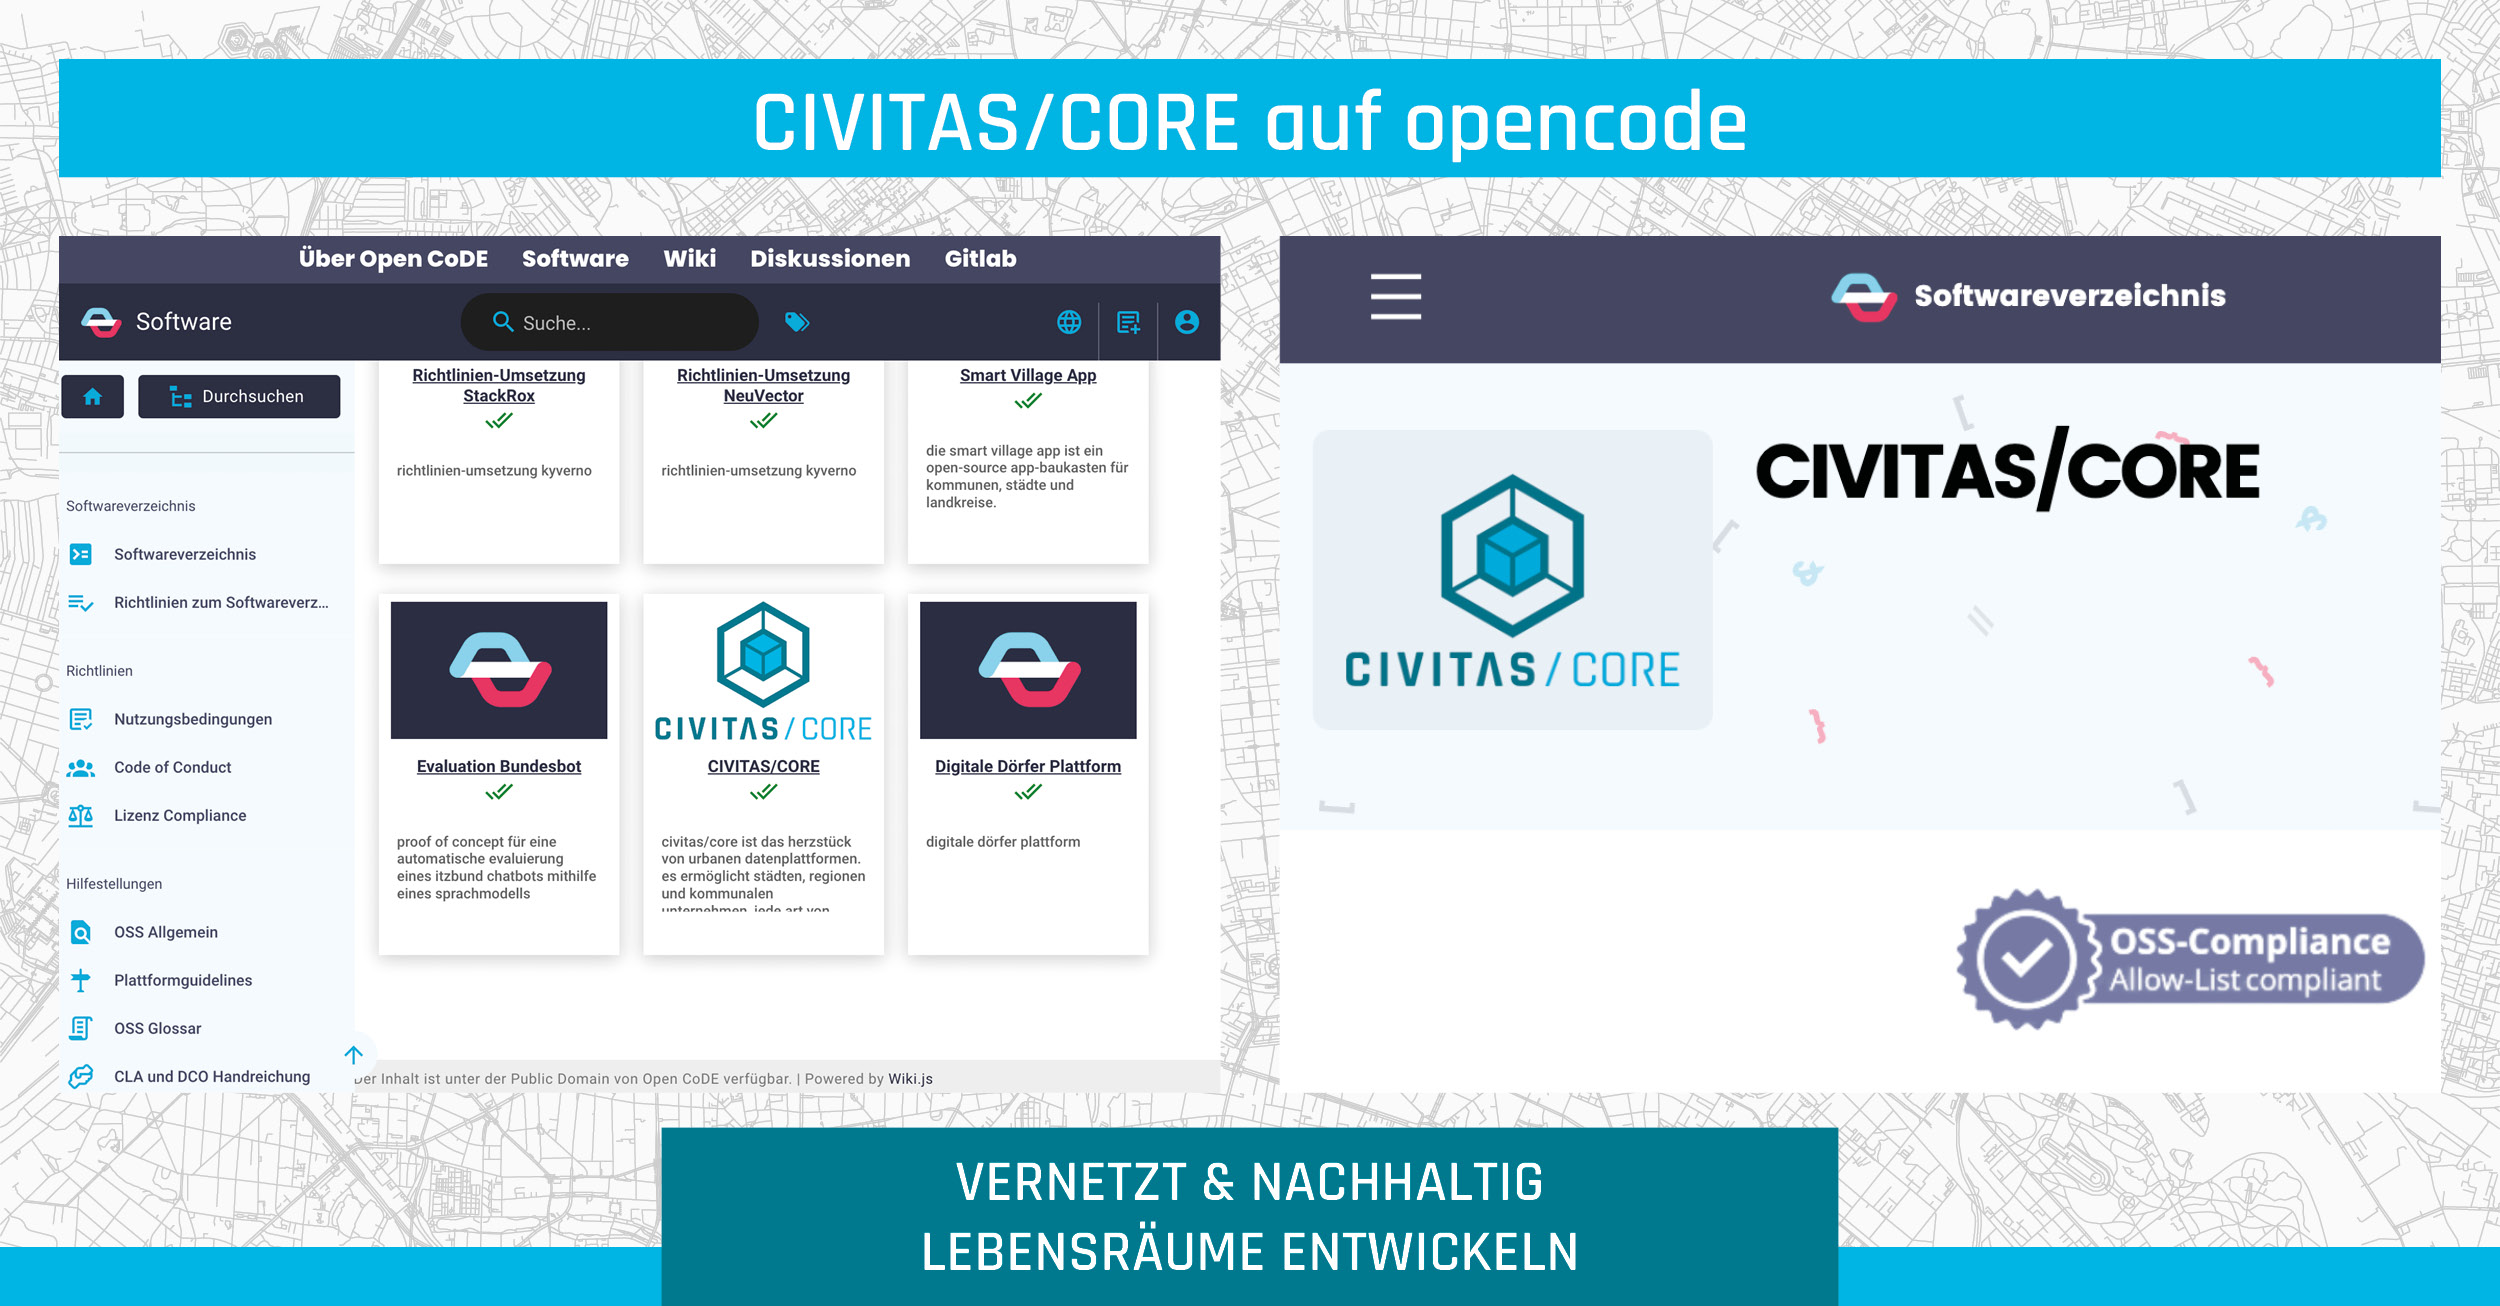 CIVITASCORE Opencode